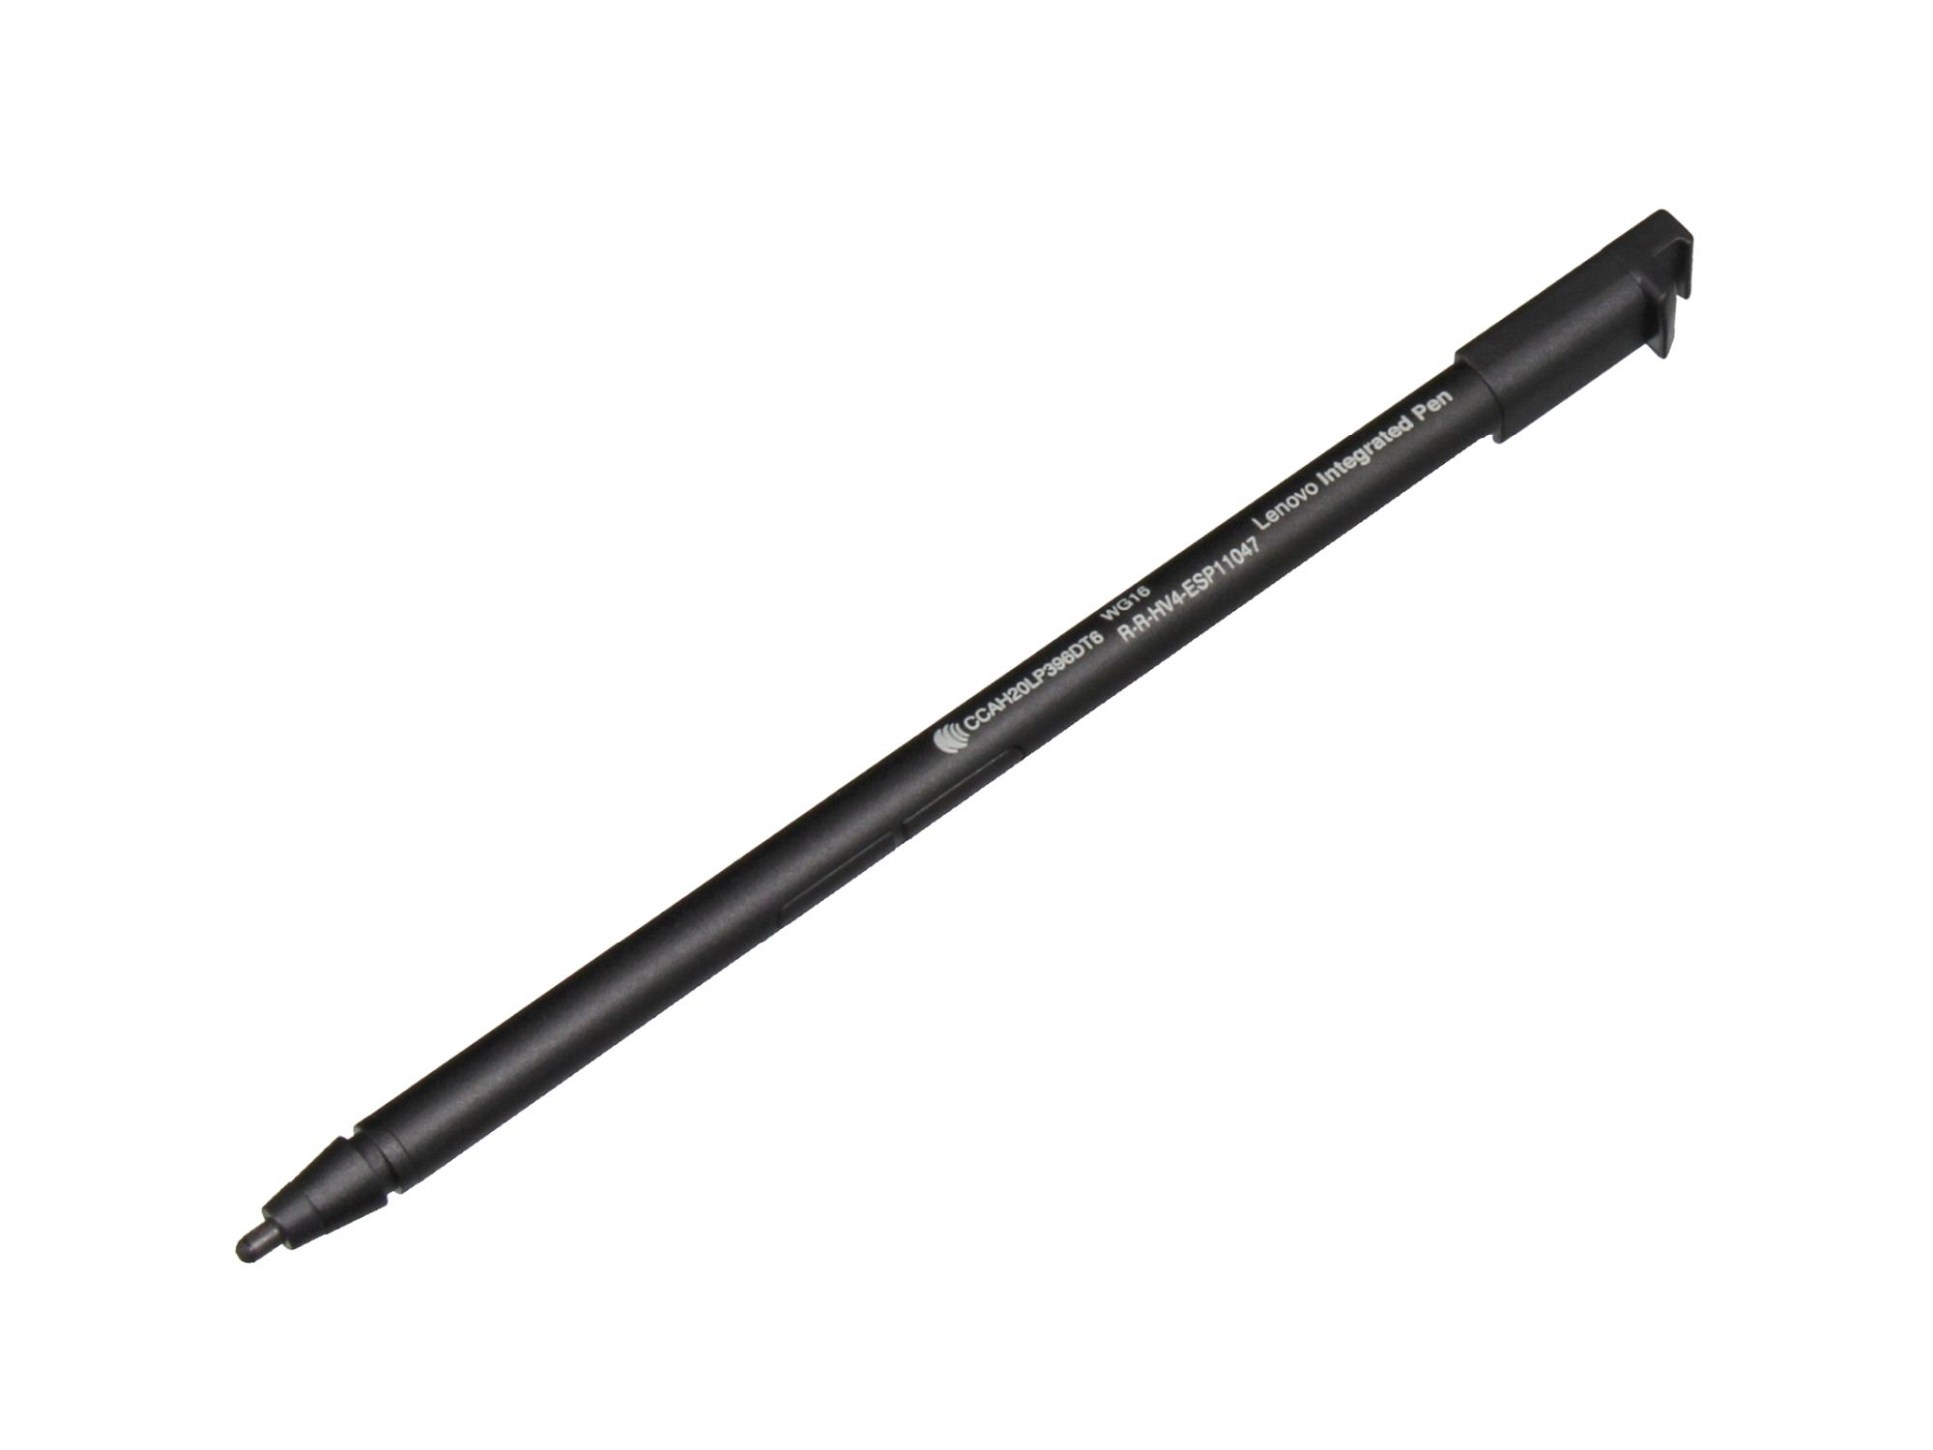 PEN130 Stylus Pen